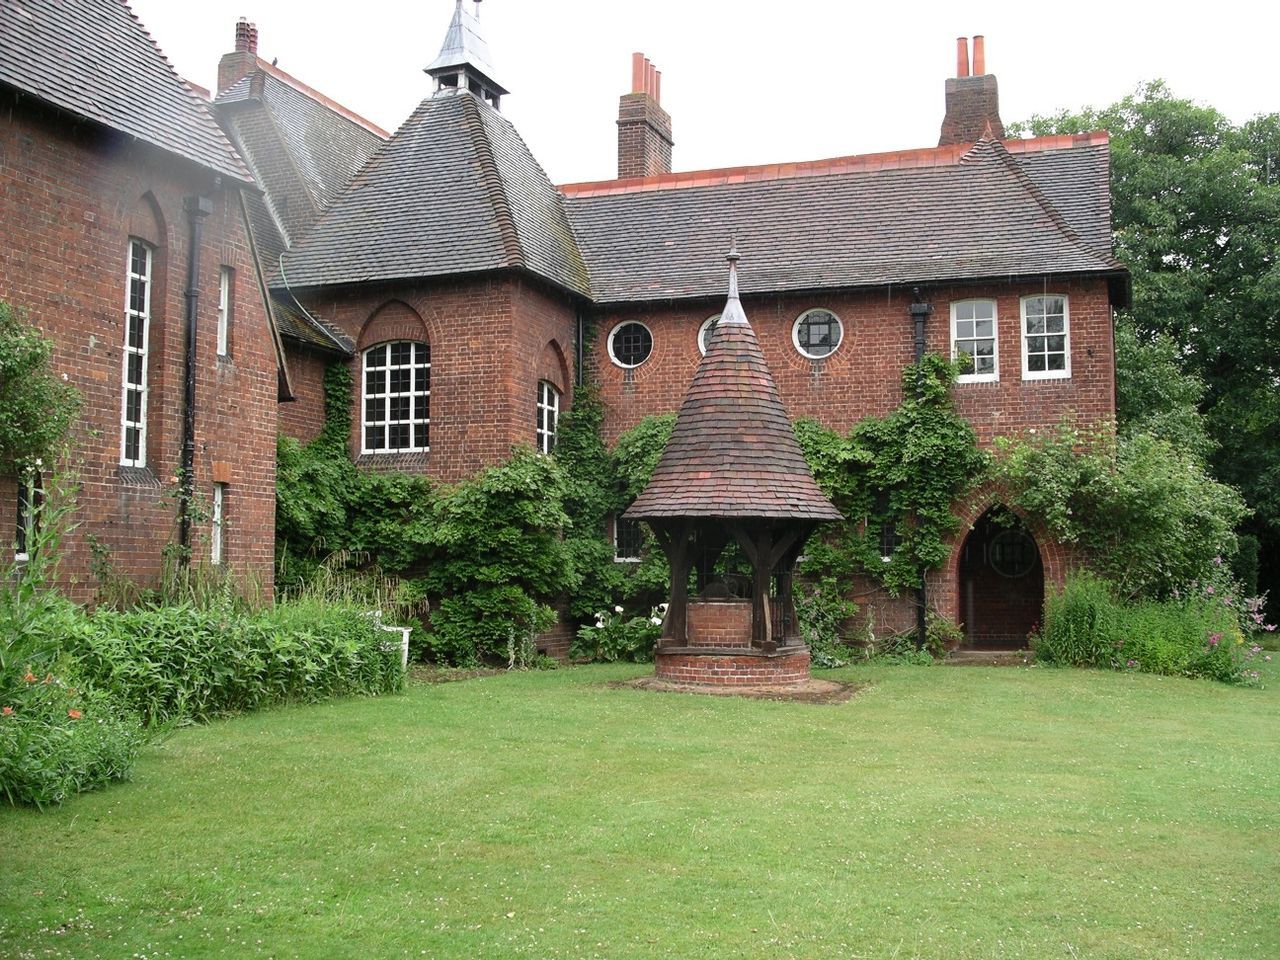 Philip Webb tarafından tasarlanan ve 1860’ta tamamlanan, Bexleyheath’teki William Morris’in Red House’u; Arts and Crafts hareketinin en önemli yapılarından biridir.